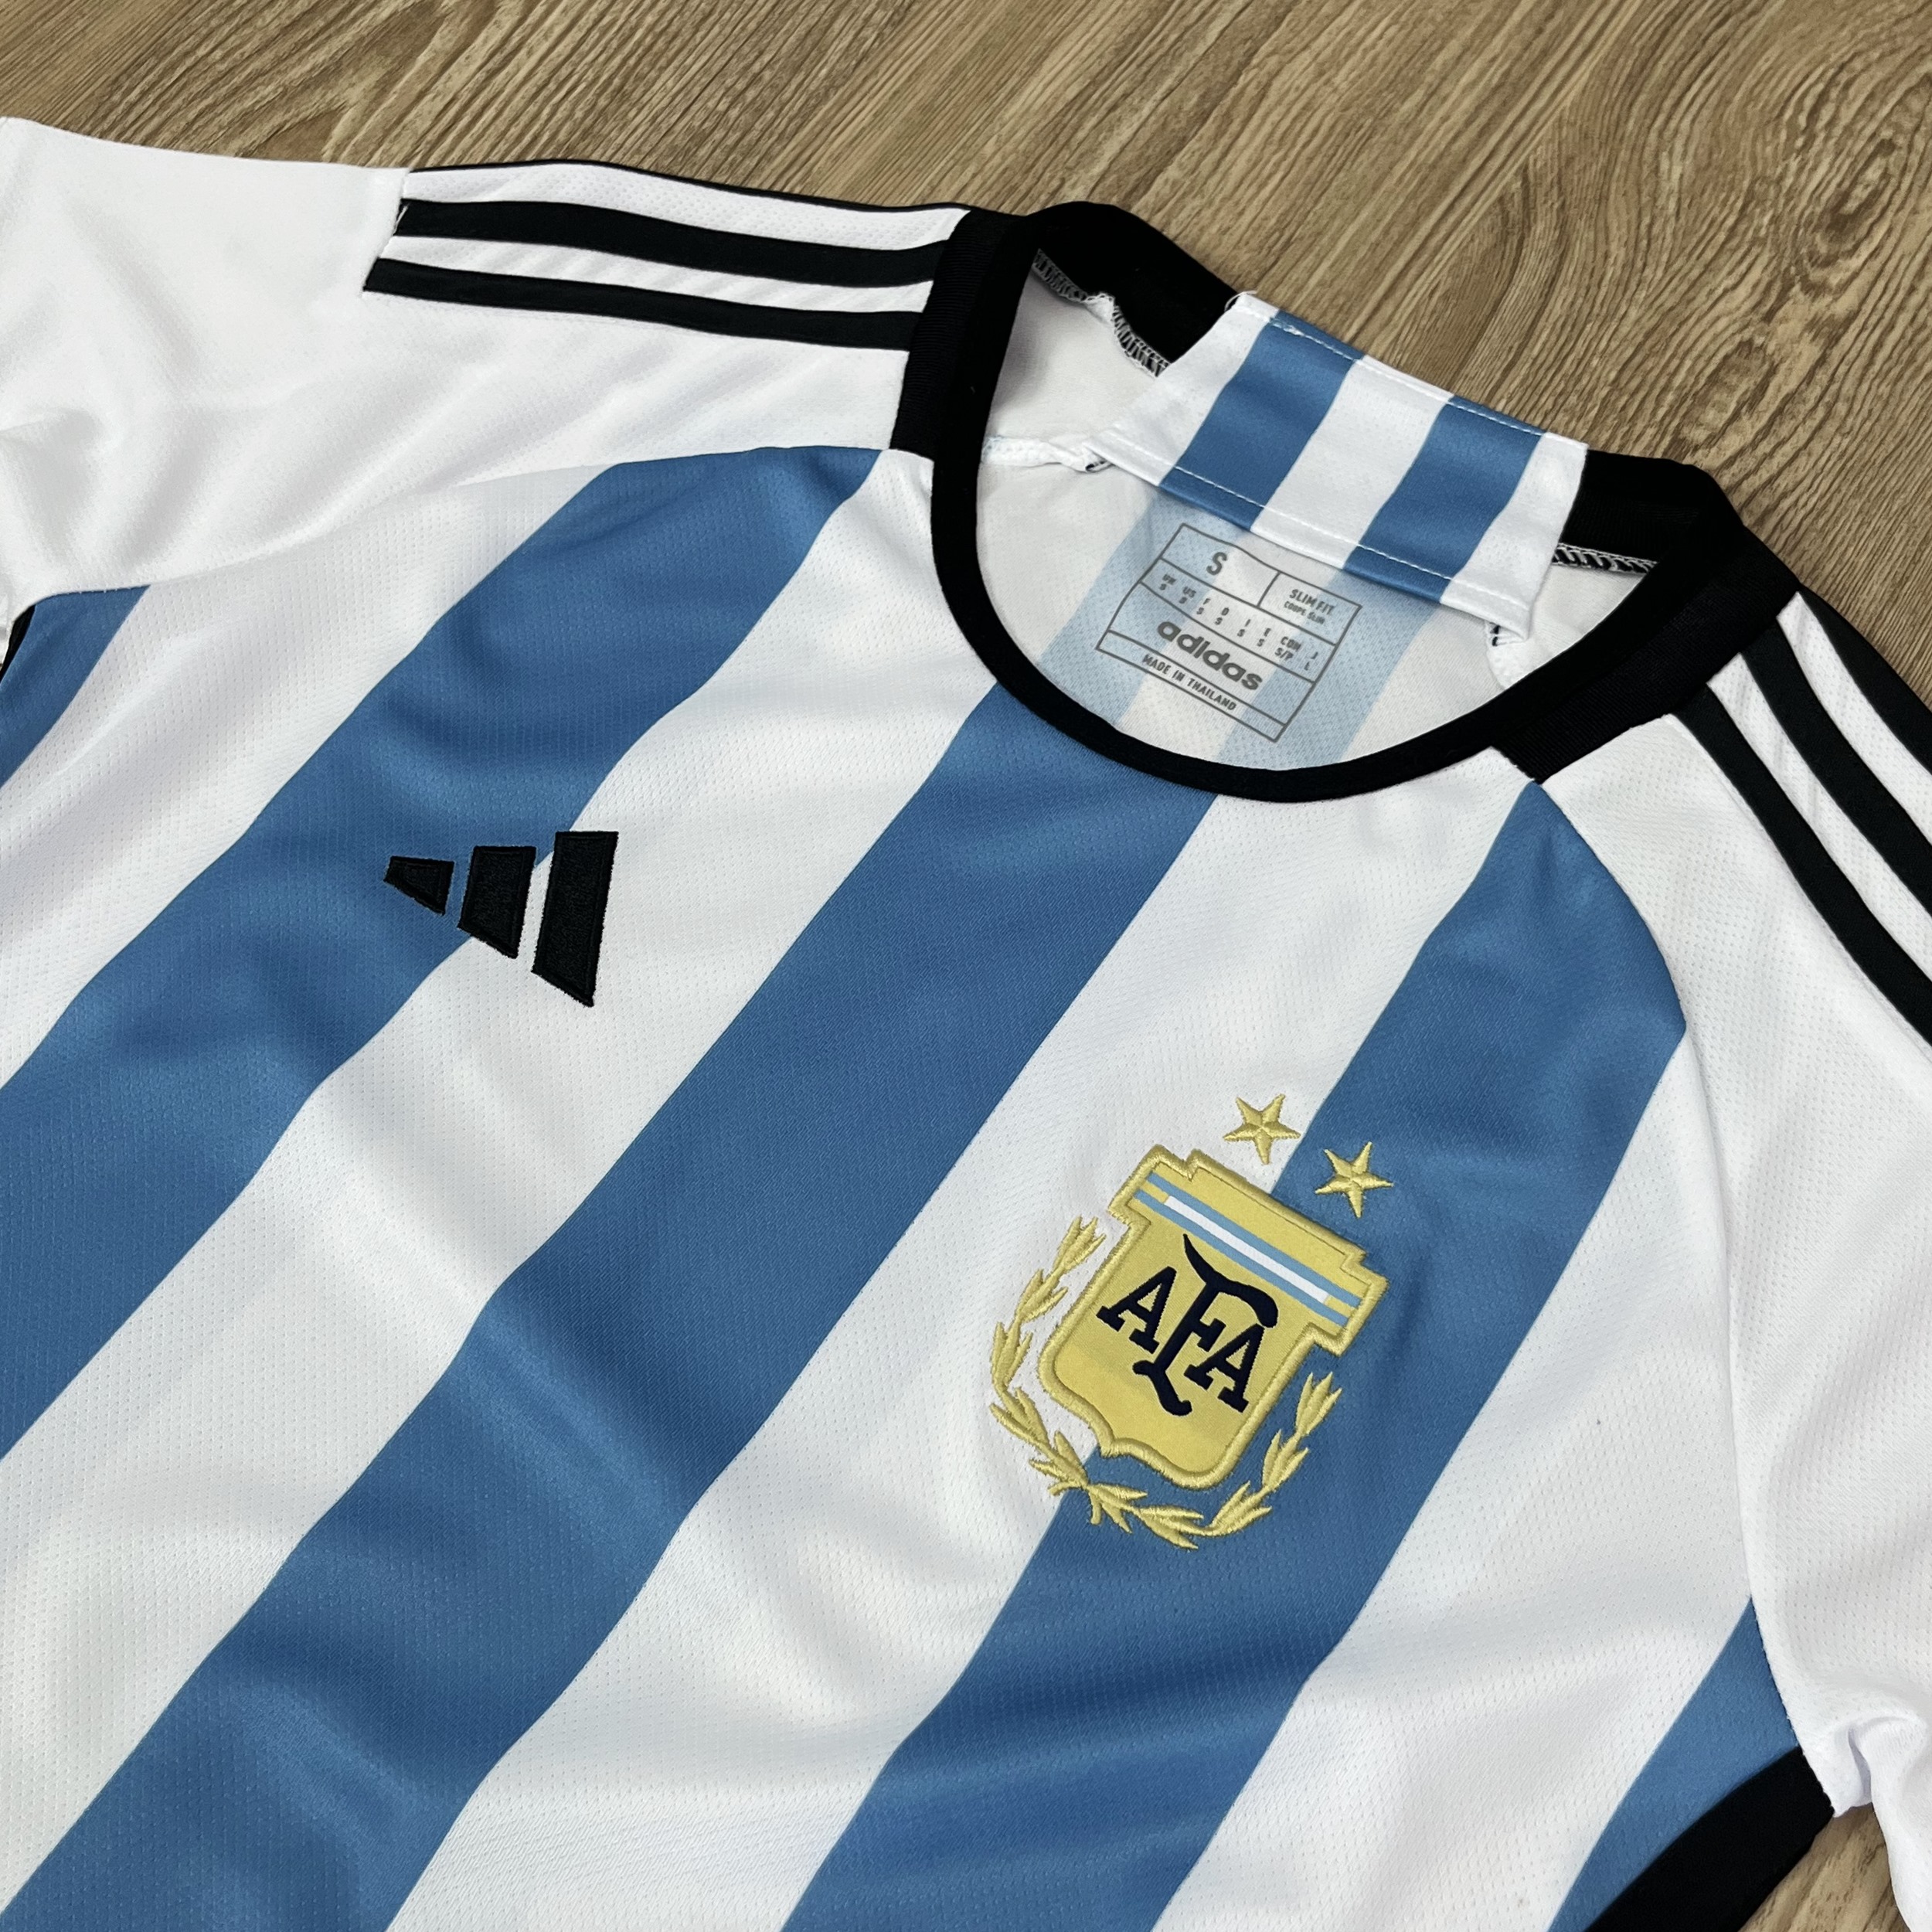 ภาพประกอบคำอธิบาย เสื้อบอลผู้หญิง เสื้อบอลทีม Argentine แบบเดียวกับต้นฉบับ รับประกันคุณภาพ เกรดAAA